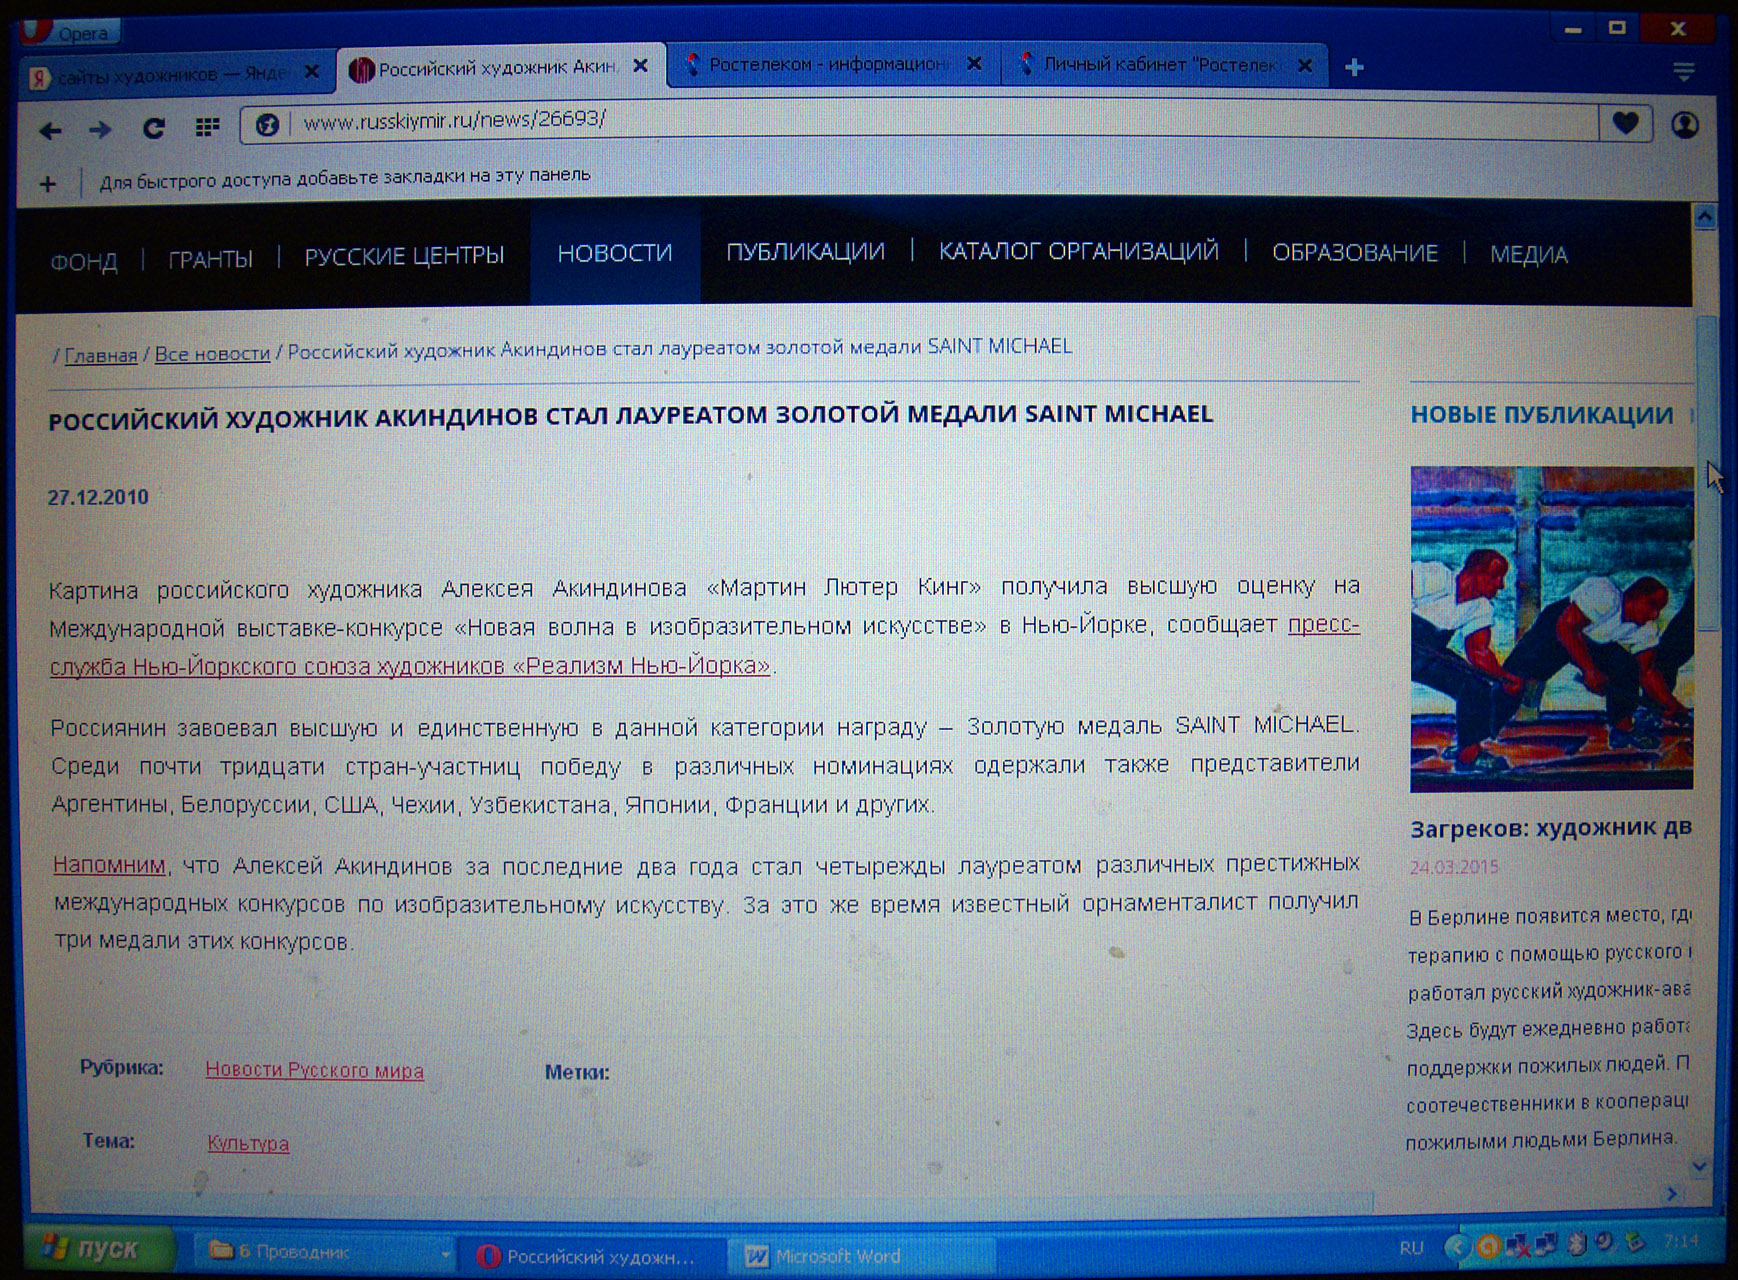 russkiy mir site laureat 2